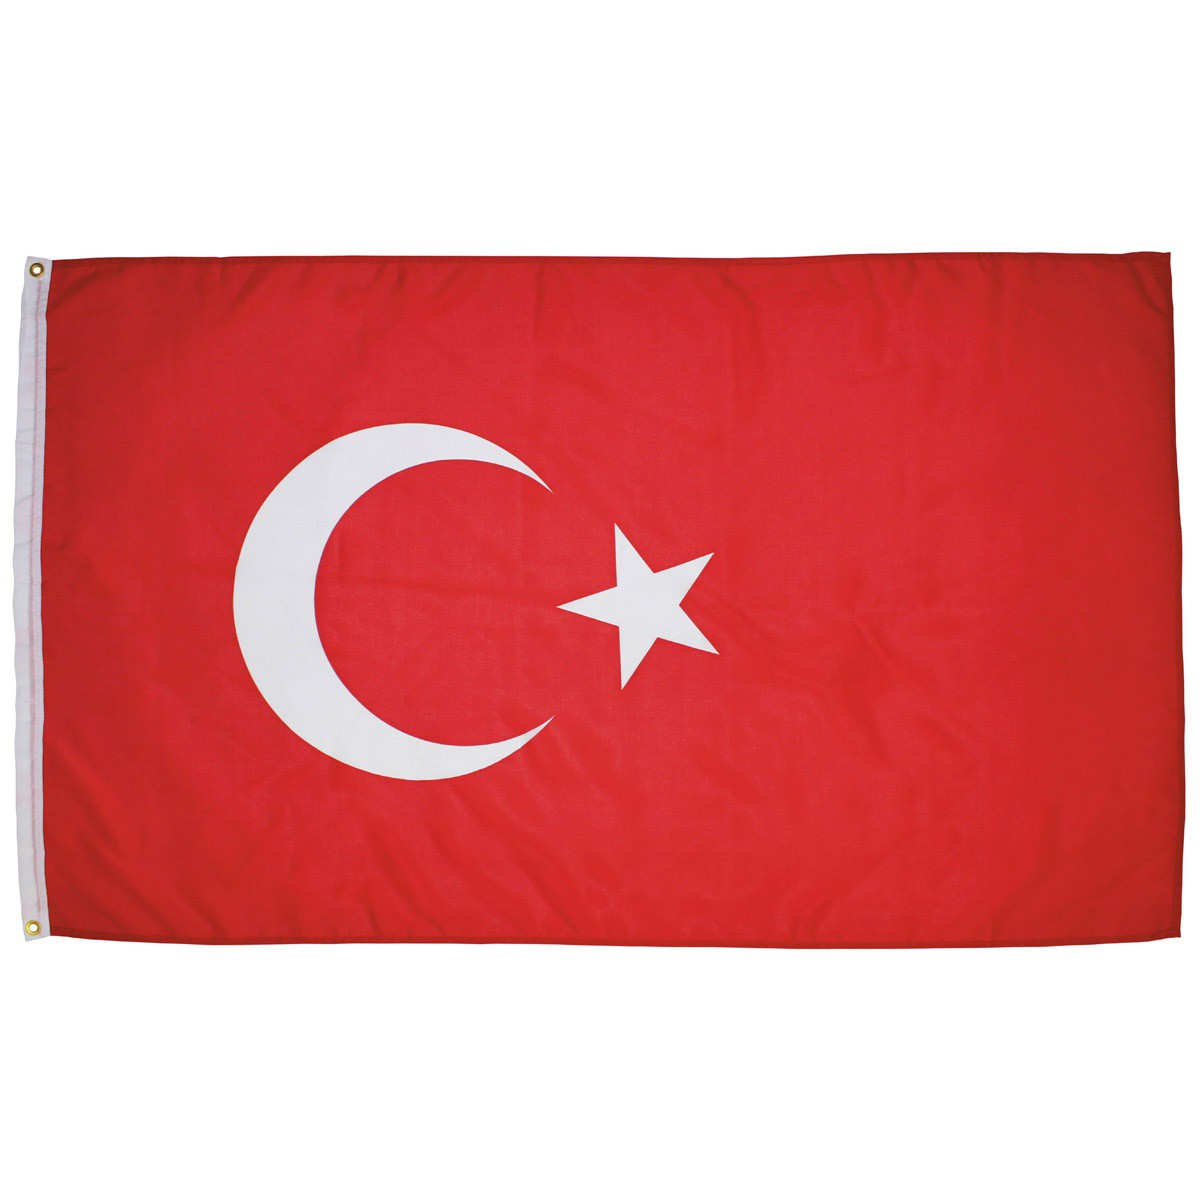 Turecká vlajka 150x90cm obojstranná polyester megamix.sk